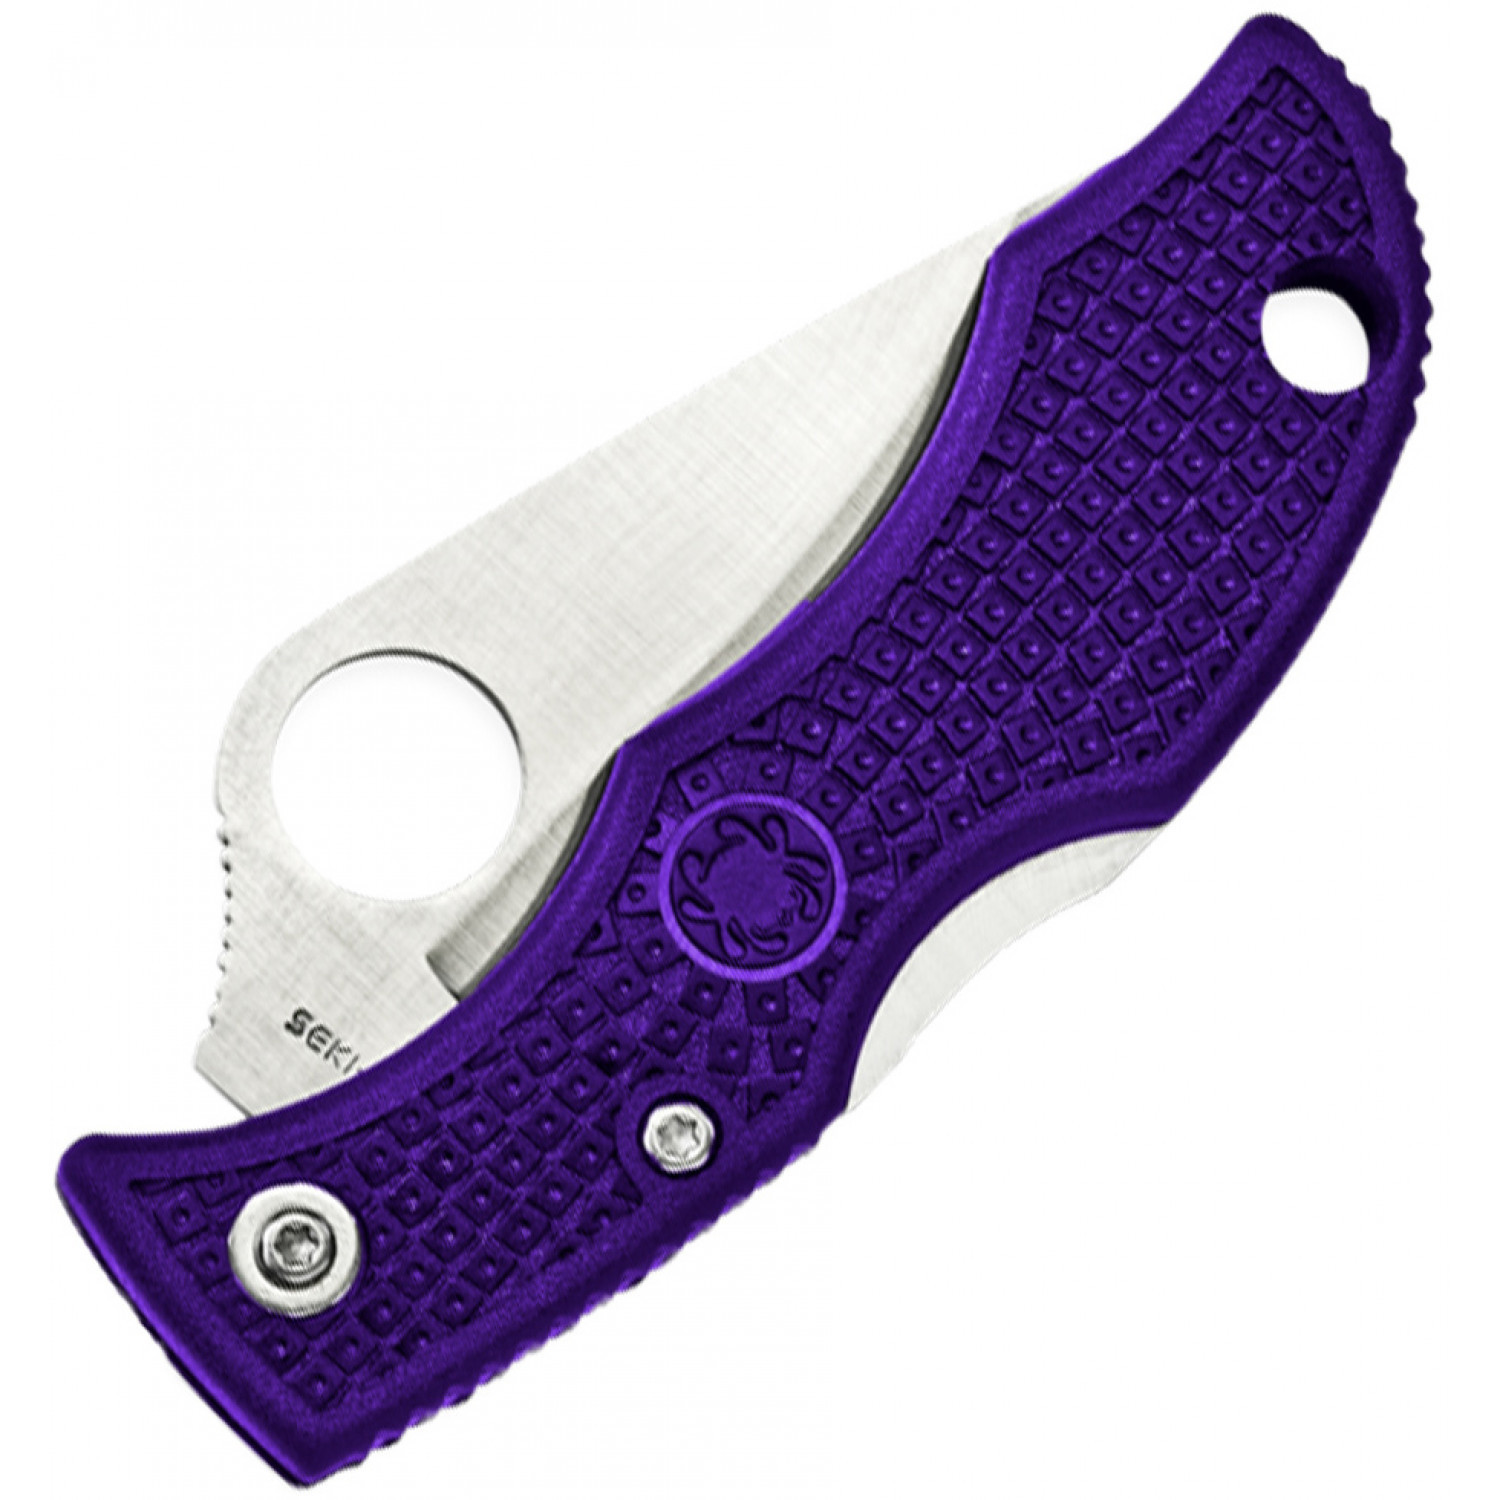 Нож складной Ladybug 3 - Spyderco LPRP3, сталь VG-10 Satin Plain, рукоять термопластик FRN, фиолетовый - фото 2